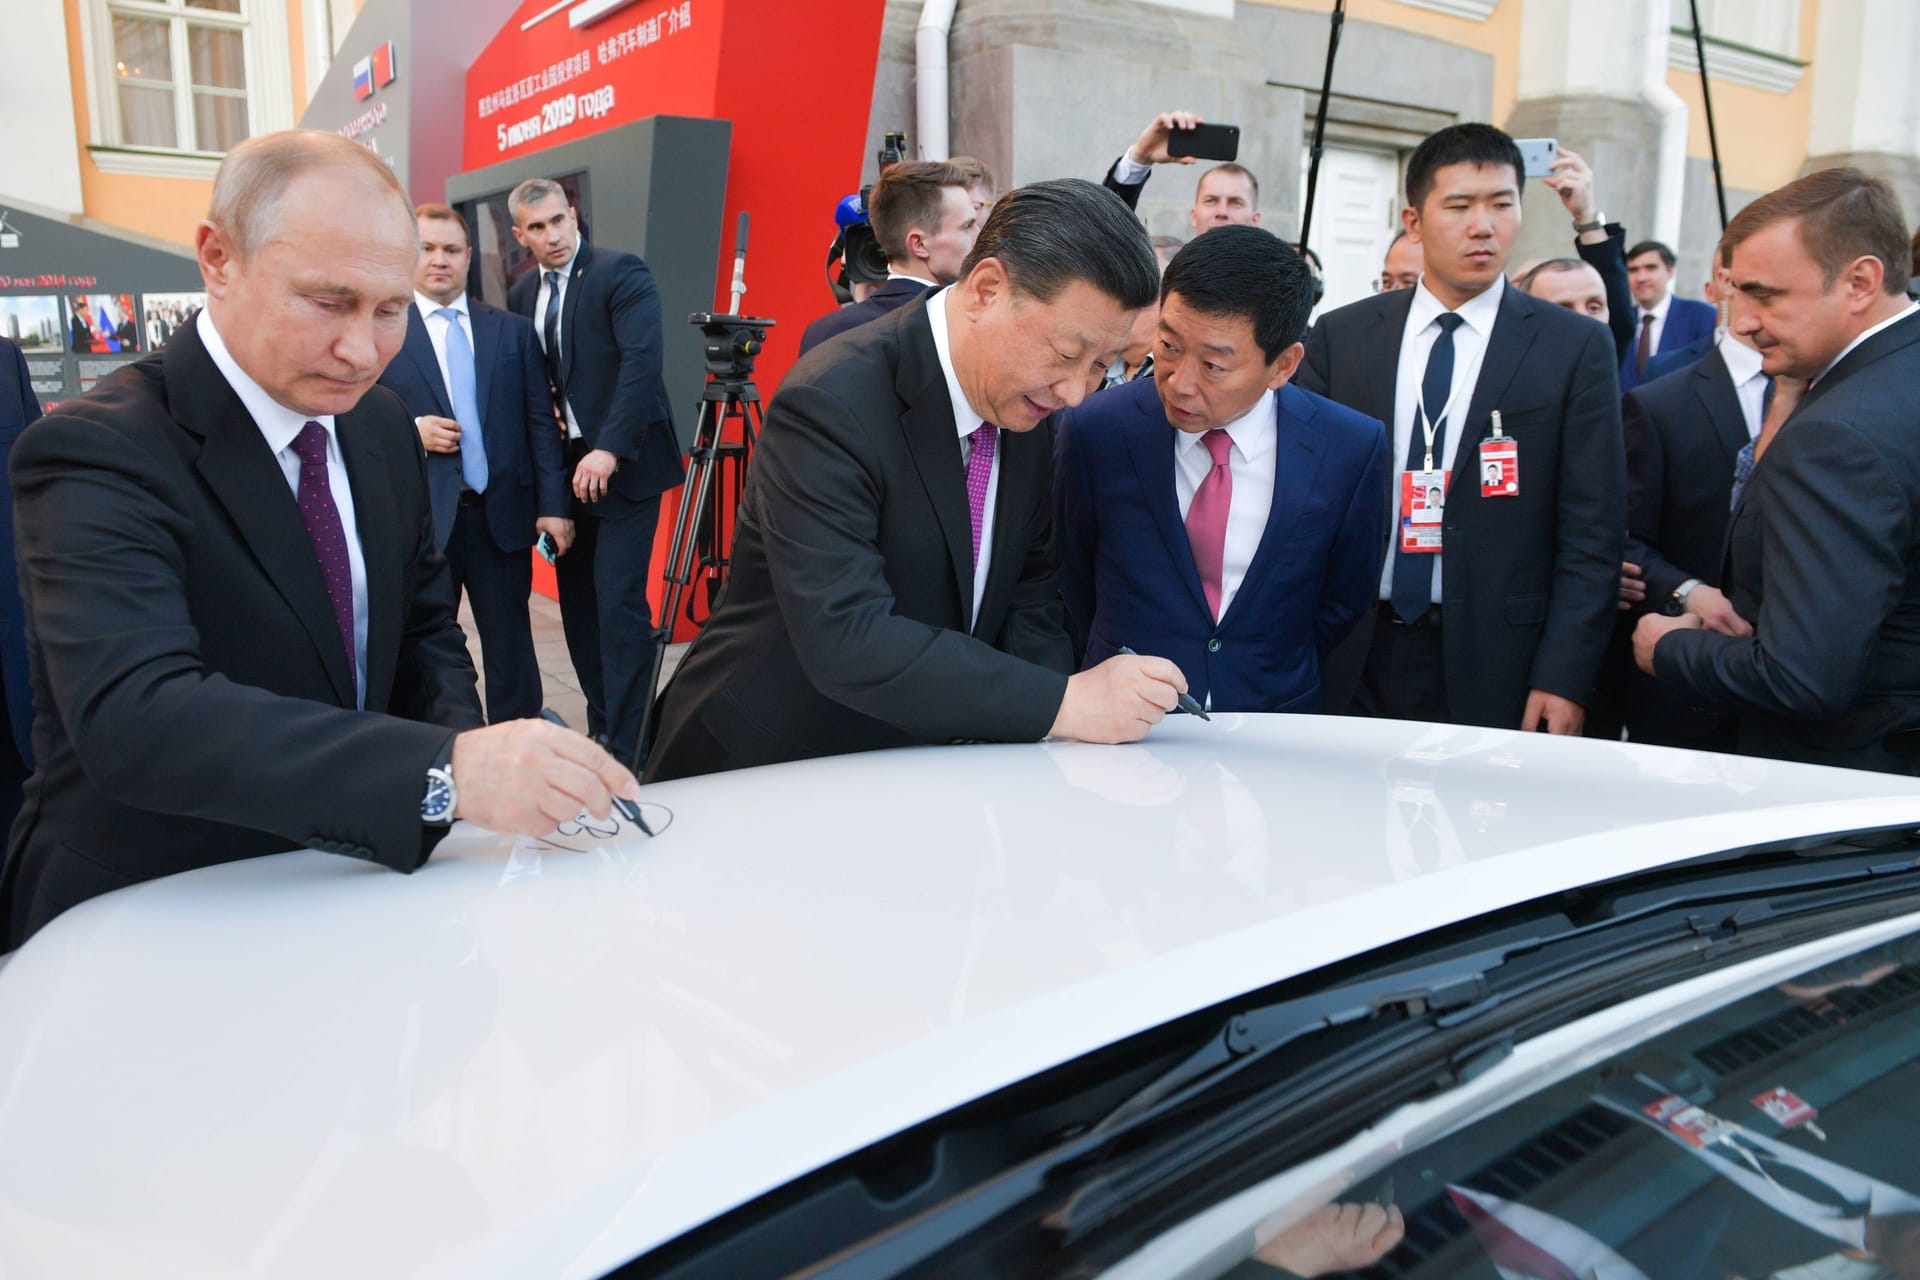 Bei der Eröffnung der neuen Haval-Autofabrik von Great Wall Motors in der russischen Region Tula geben Putin und Xi Autogramme auf einem Haval F7.